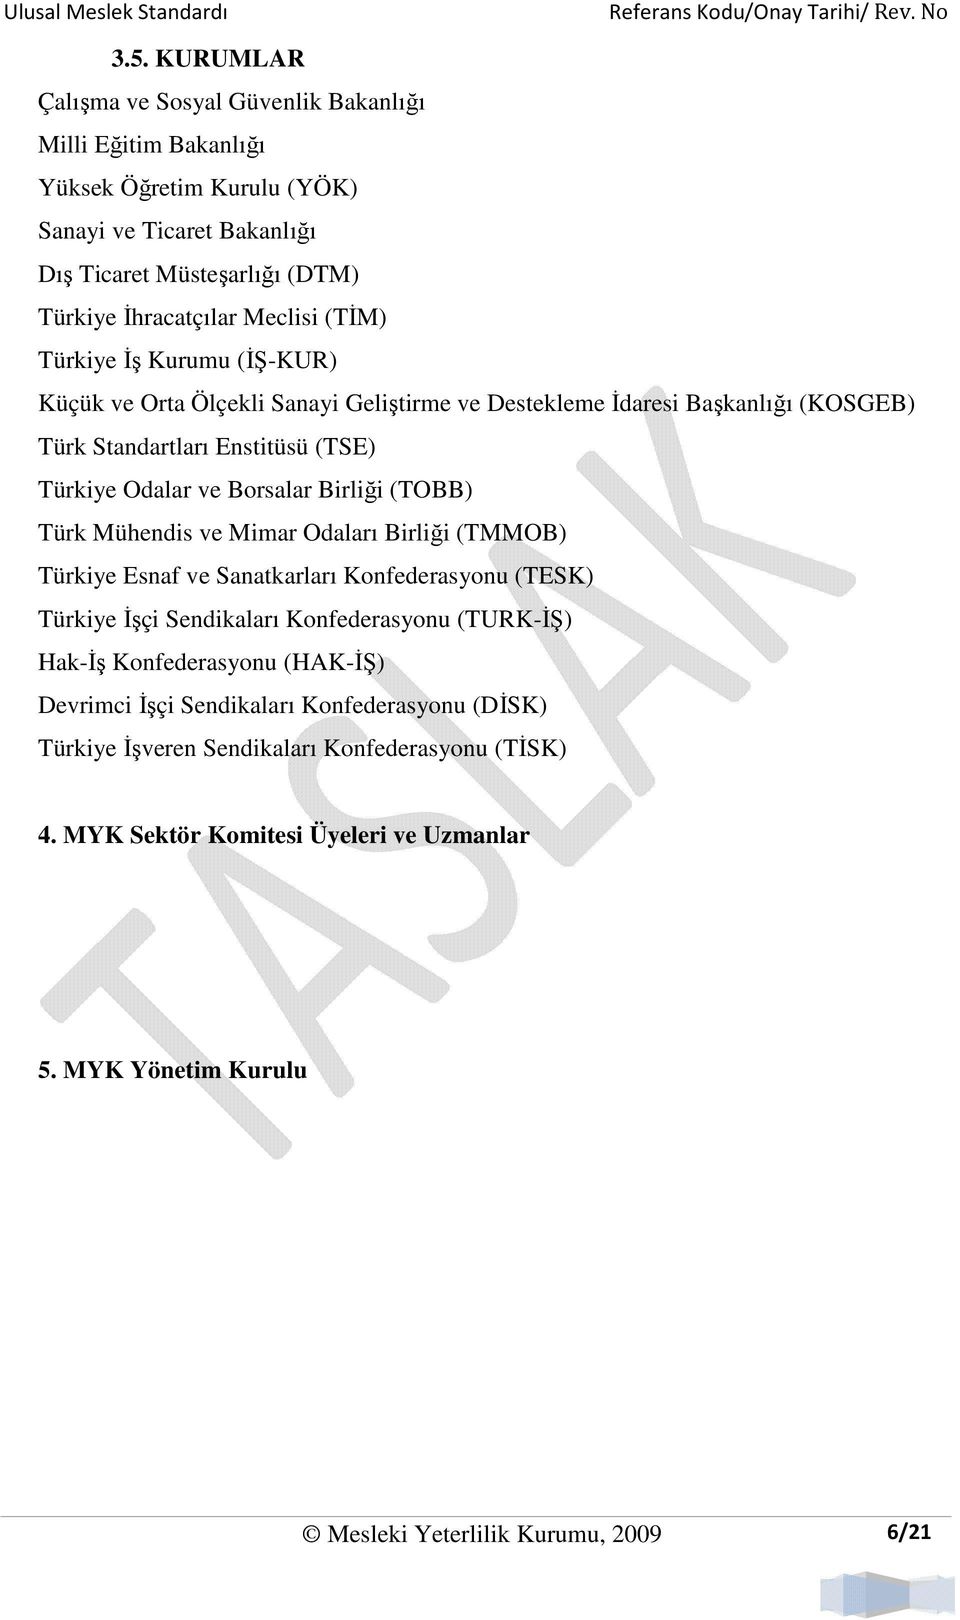 (TOBB) Türk Mühendis ve Mimar Odaları Birliği (TMMOB) Türkiye Esnaf ve Sanatkarları Konfederasyonu (TESK) Türkiye Đşçi Sendikaları Konfederasyonu (TURK-ĐŞ) Hak-Đş Konfederasyonu (HAK-ĐŞ)